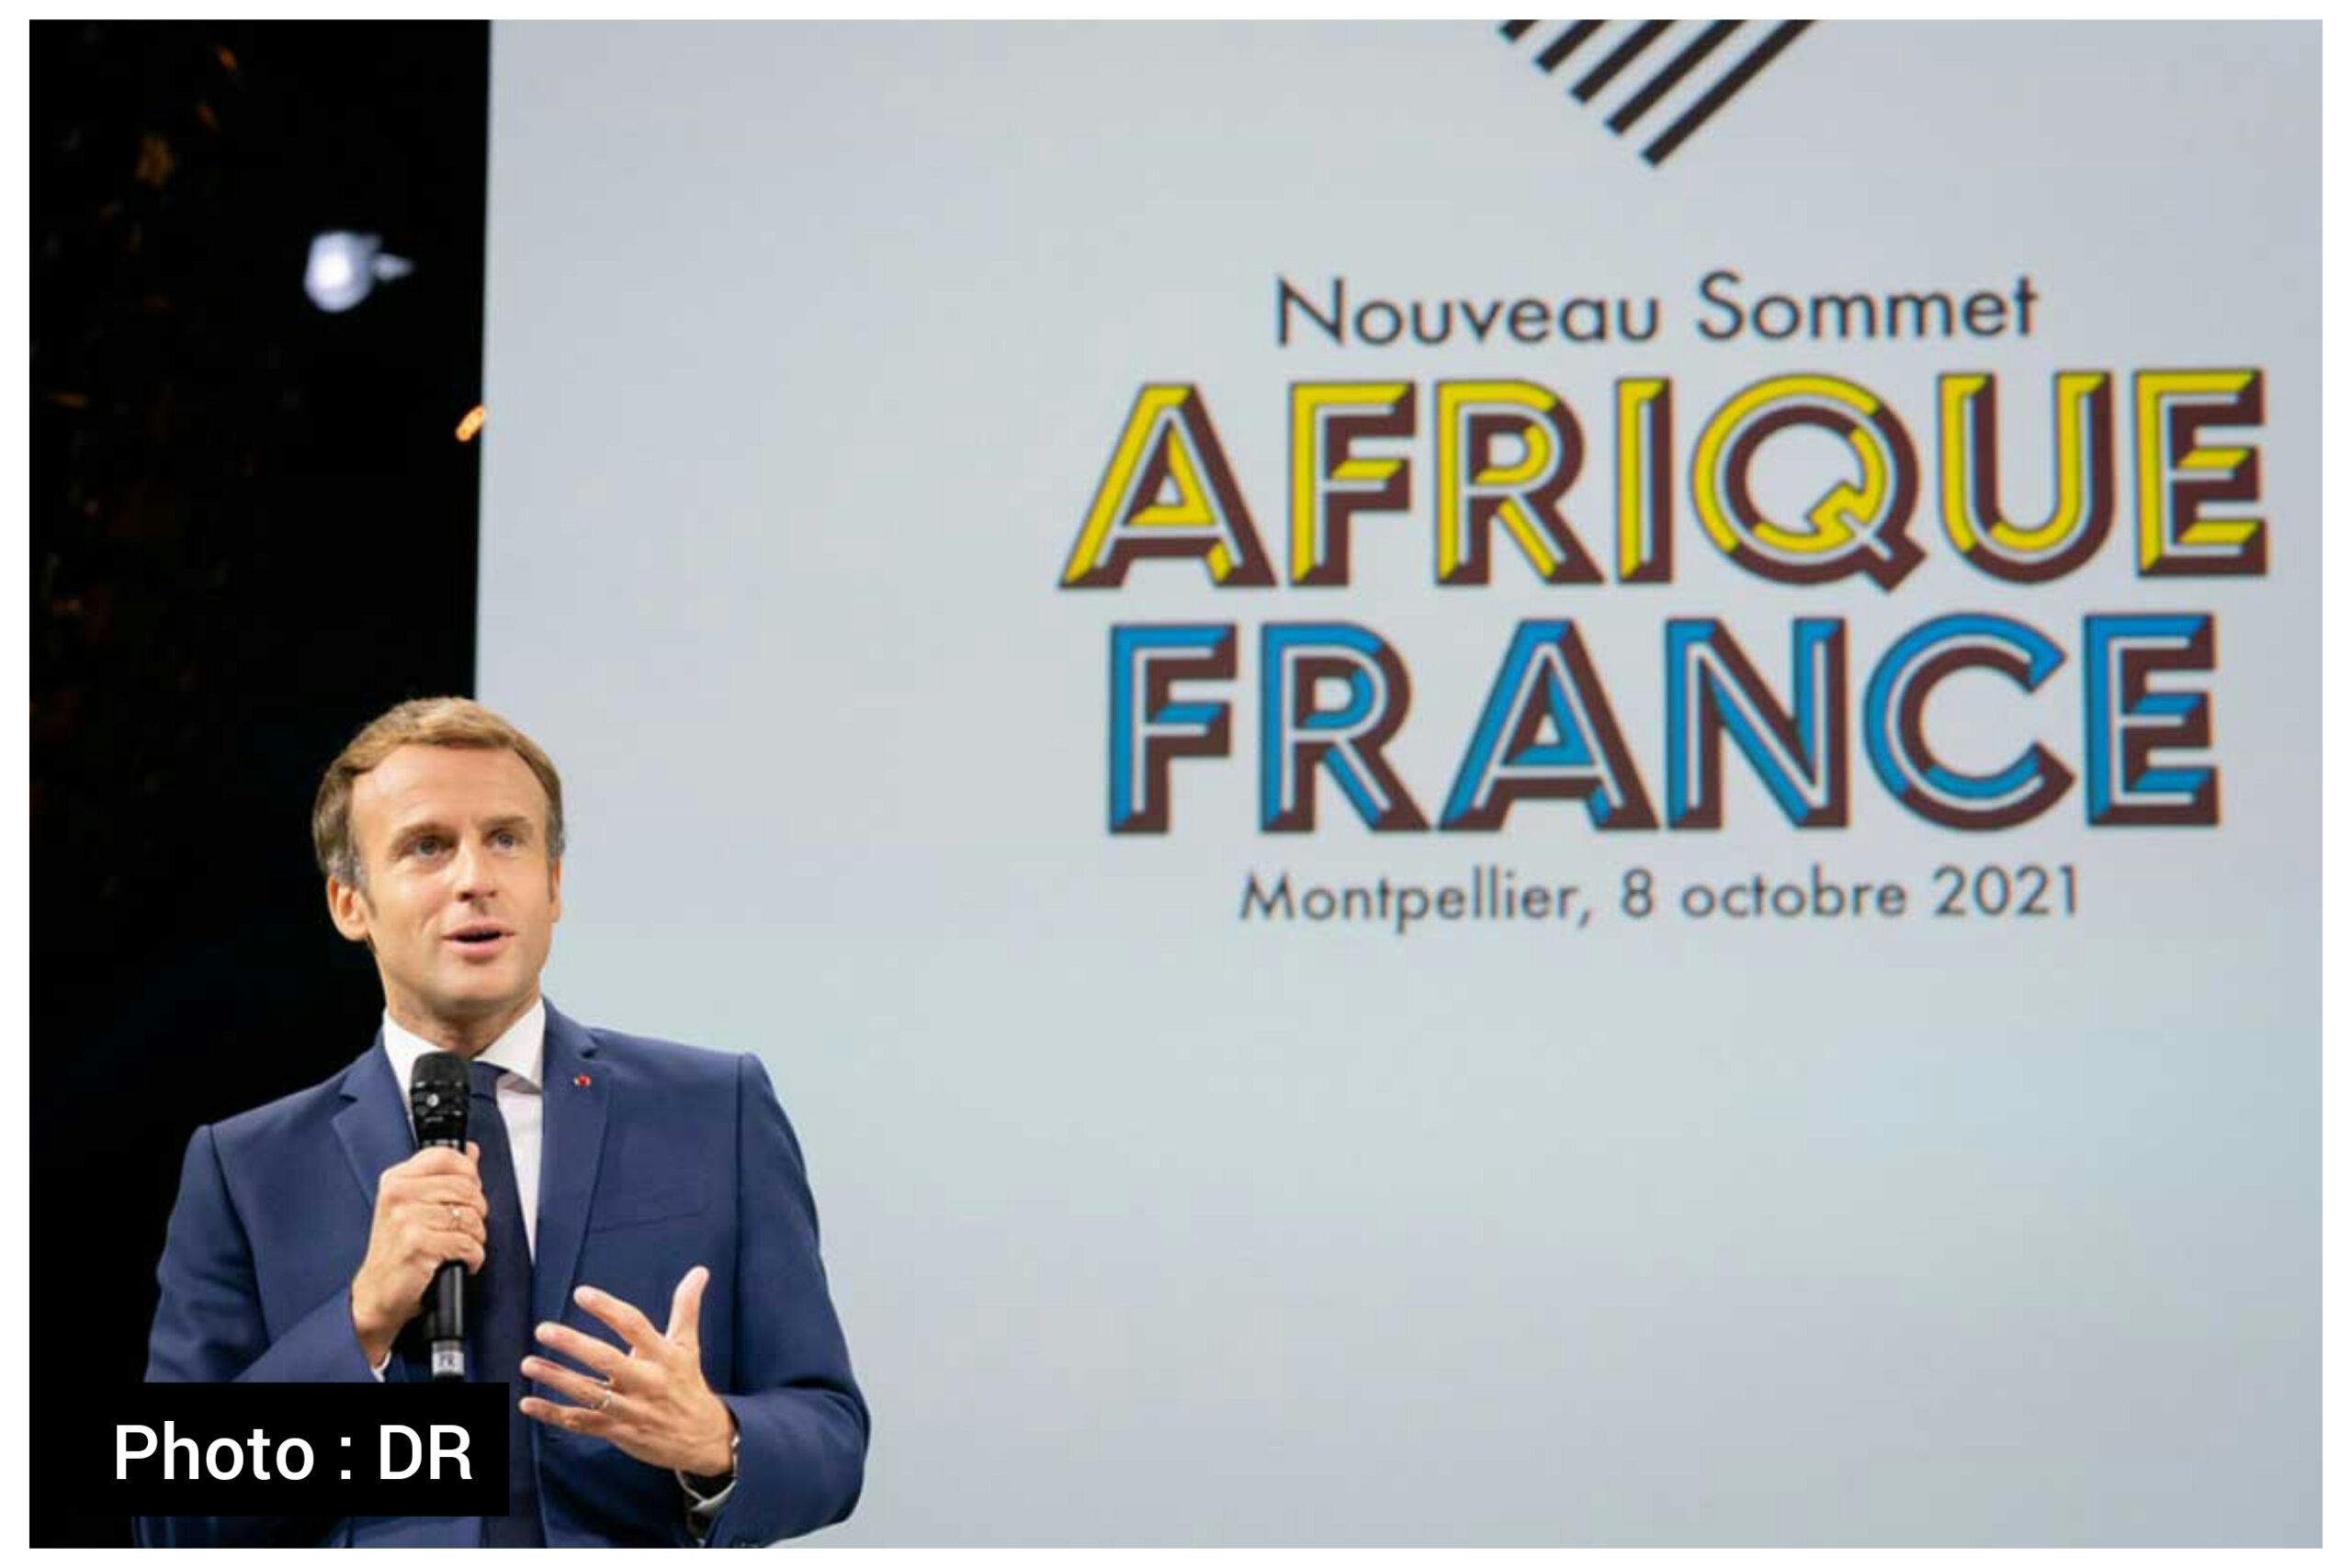 Chronique du Lundi : Il n’y a pas de rendez-vous ratés entre la France et l’Afrique, l’histoire s’écrit avec des circonstances qui changent selon les époques 